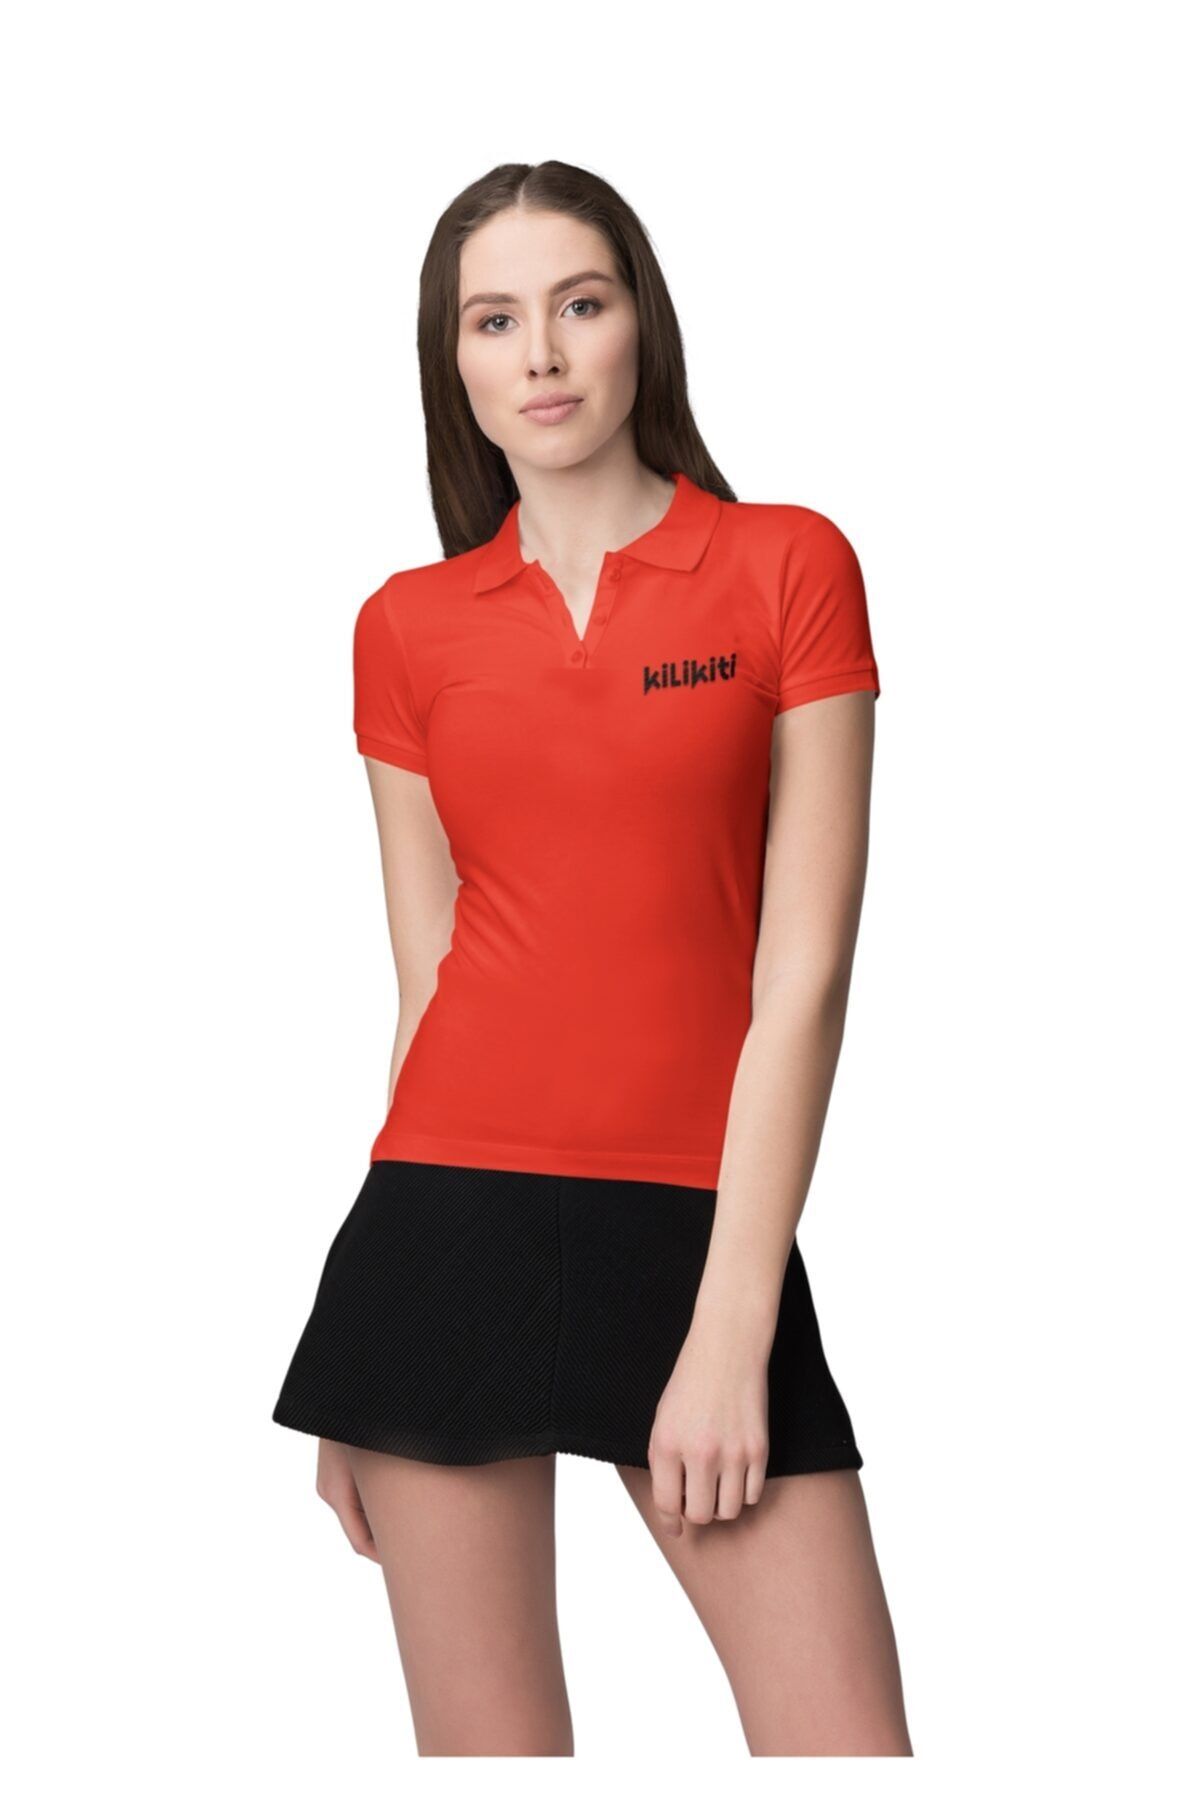 KİLİKİTİ Kadın Spor T-shirt Polo Yaka Kırmızı